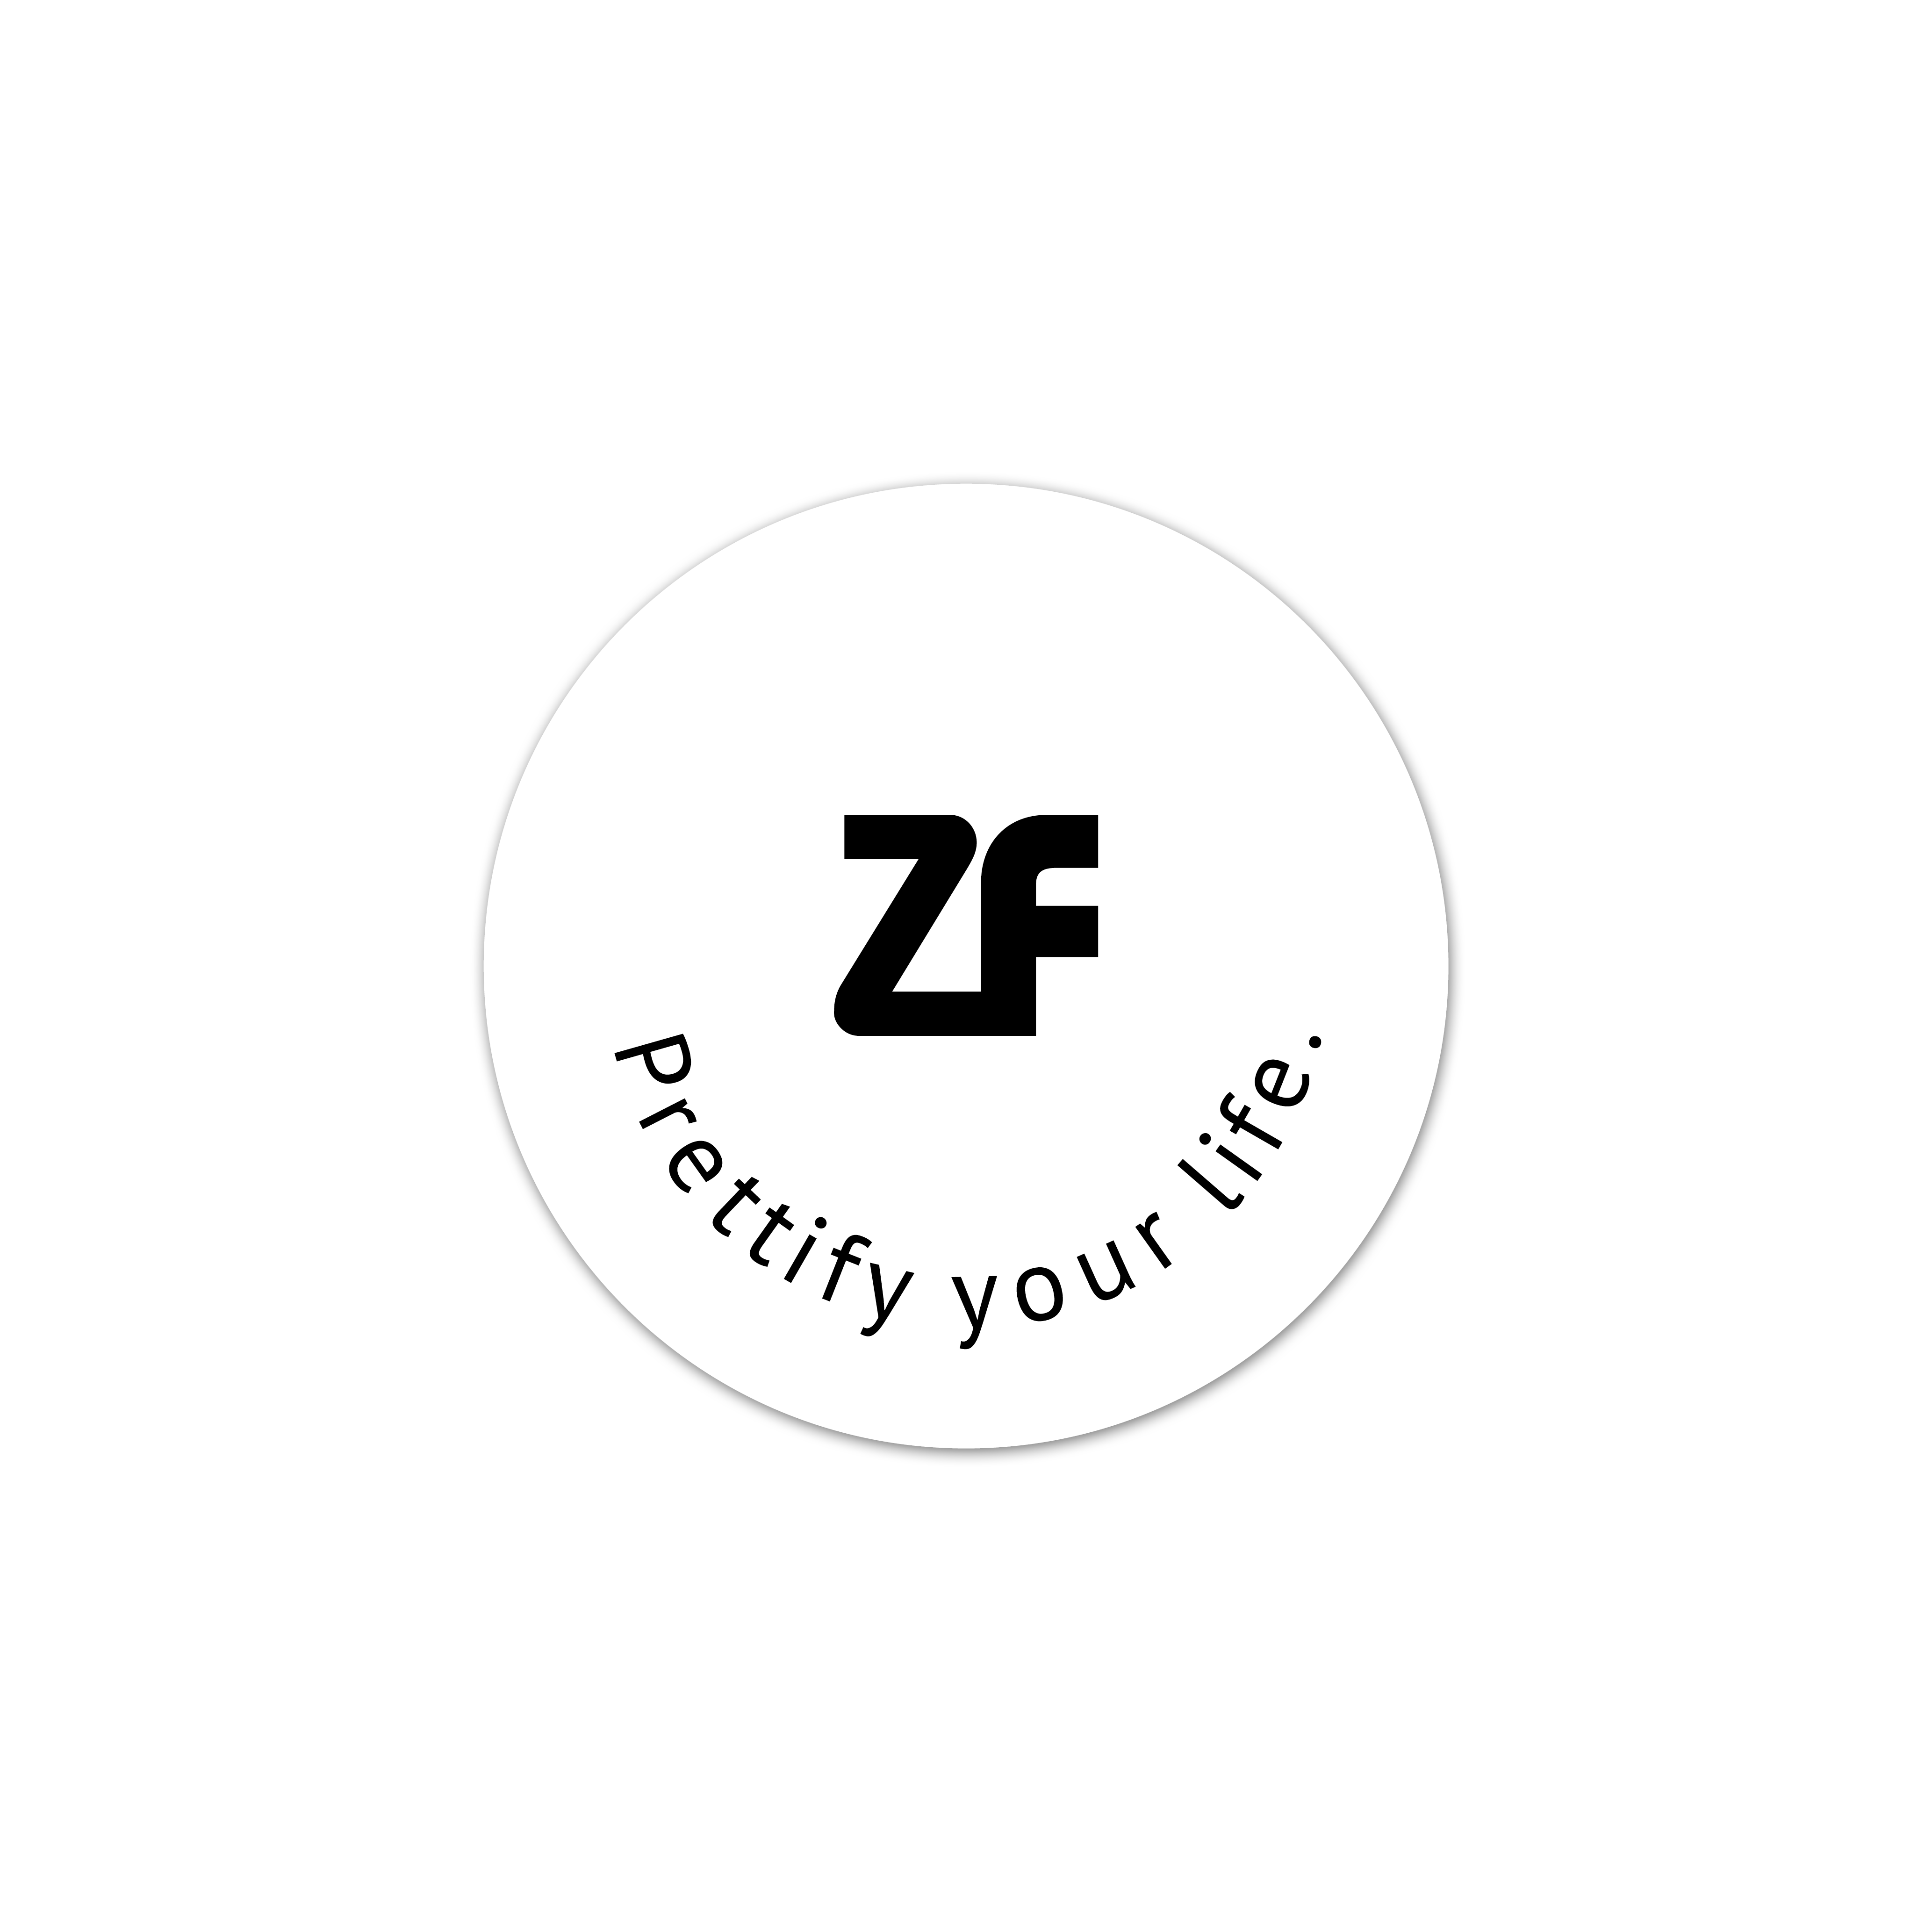 Zaglfelden - Prettify your life. Corporate Design. Werbefreundin - ihre Werbeagentur, Webagentur, Grafik und Design und Werbung in Linz Leonding.